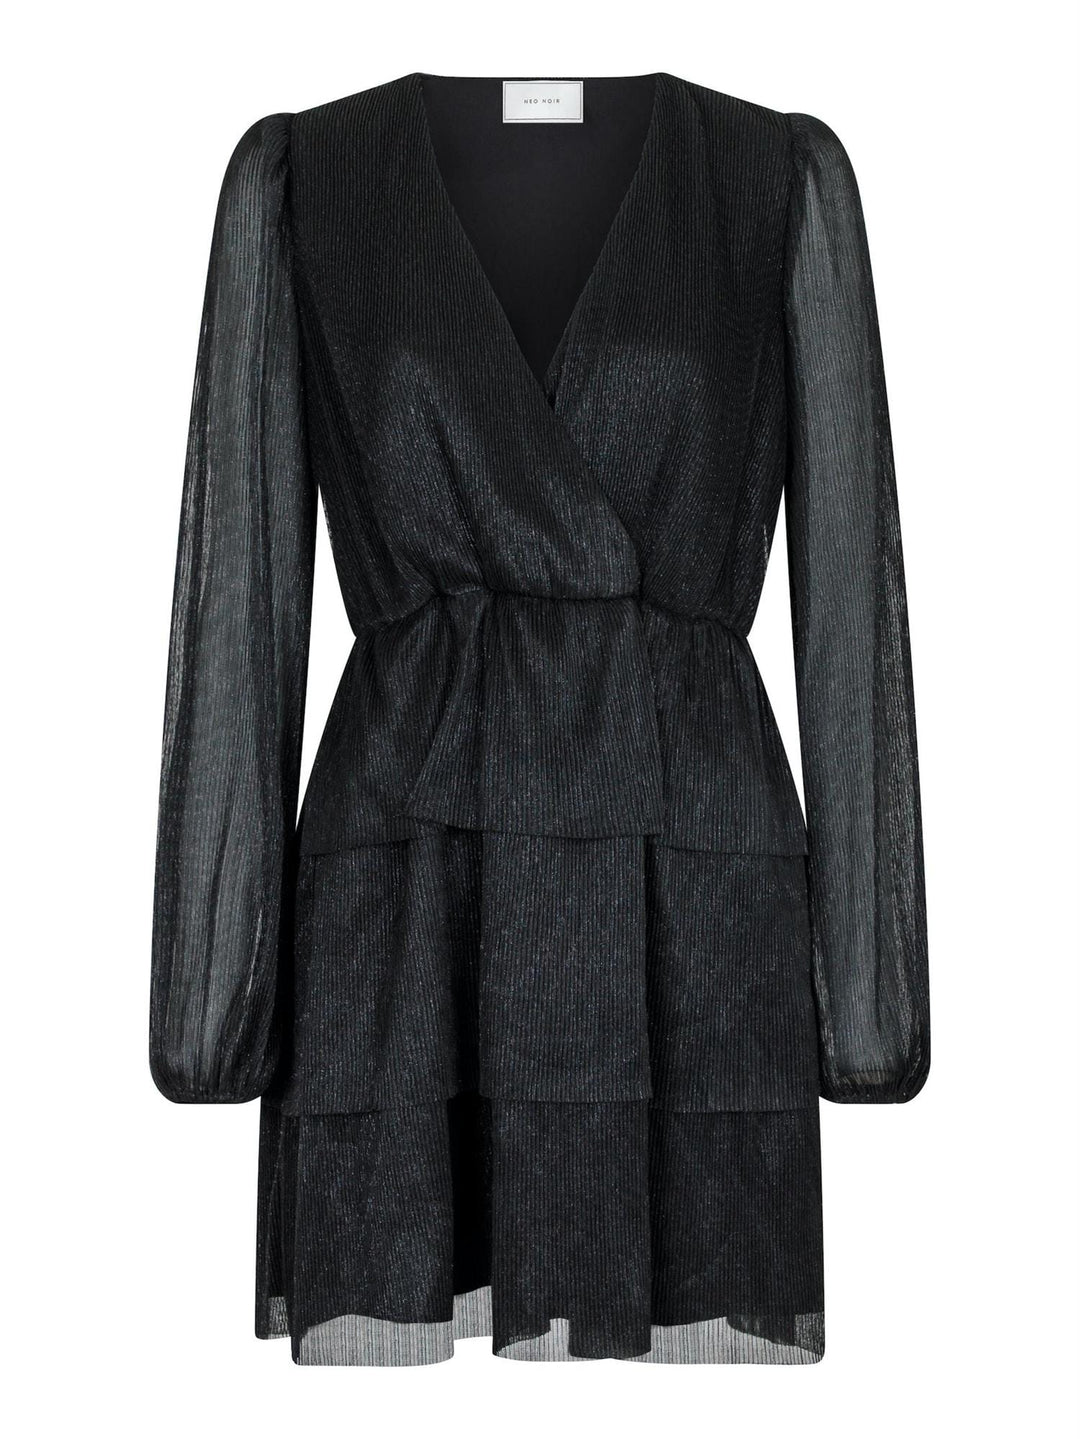 Nene Glitz Dress Black | Kjoler | Smuk - Dameklær på nett